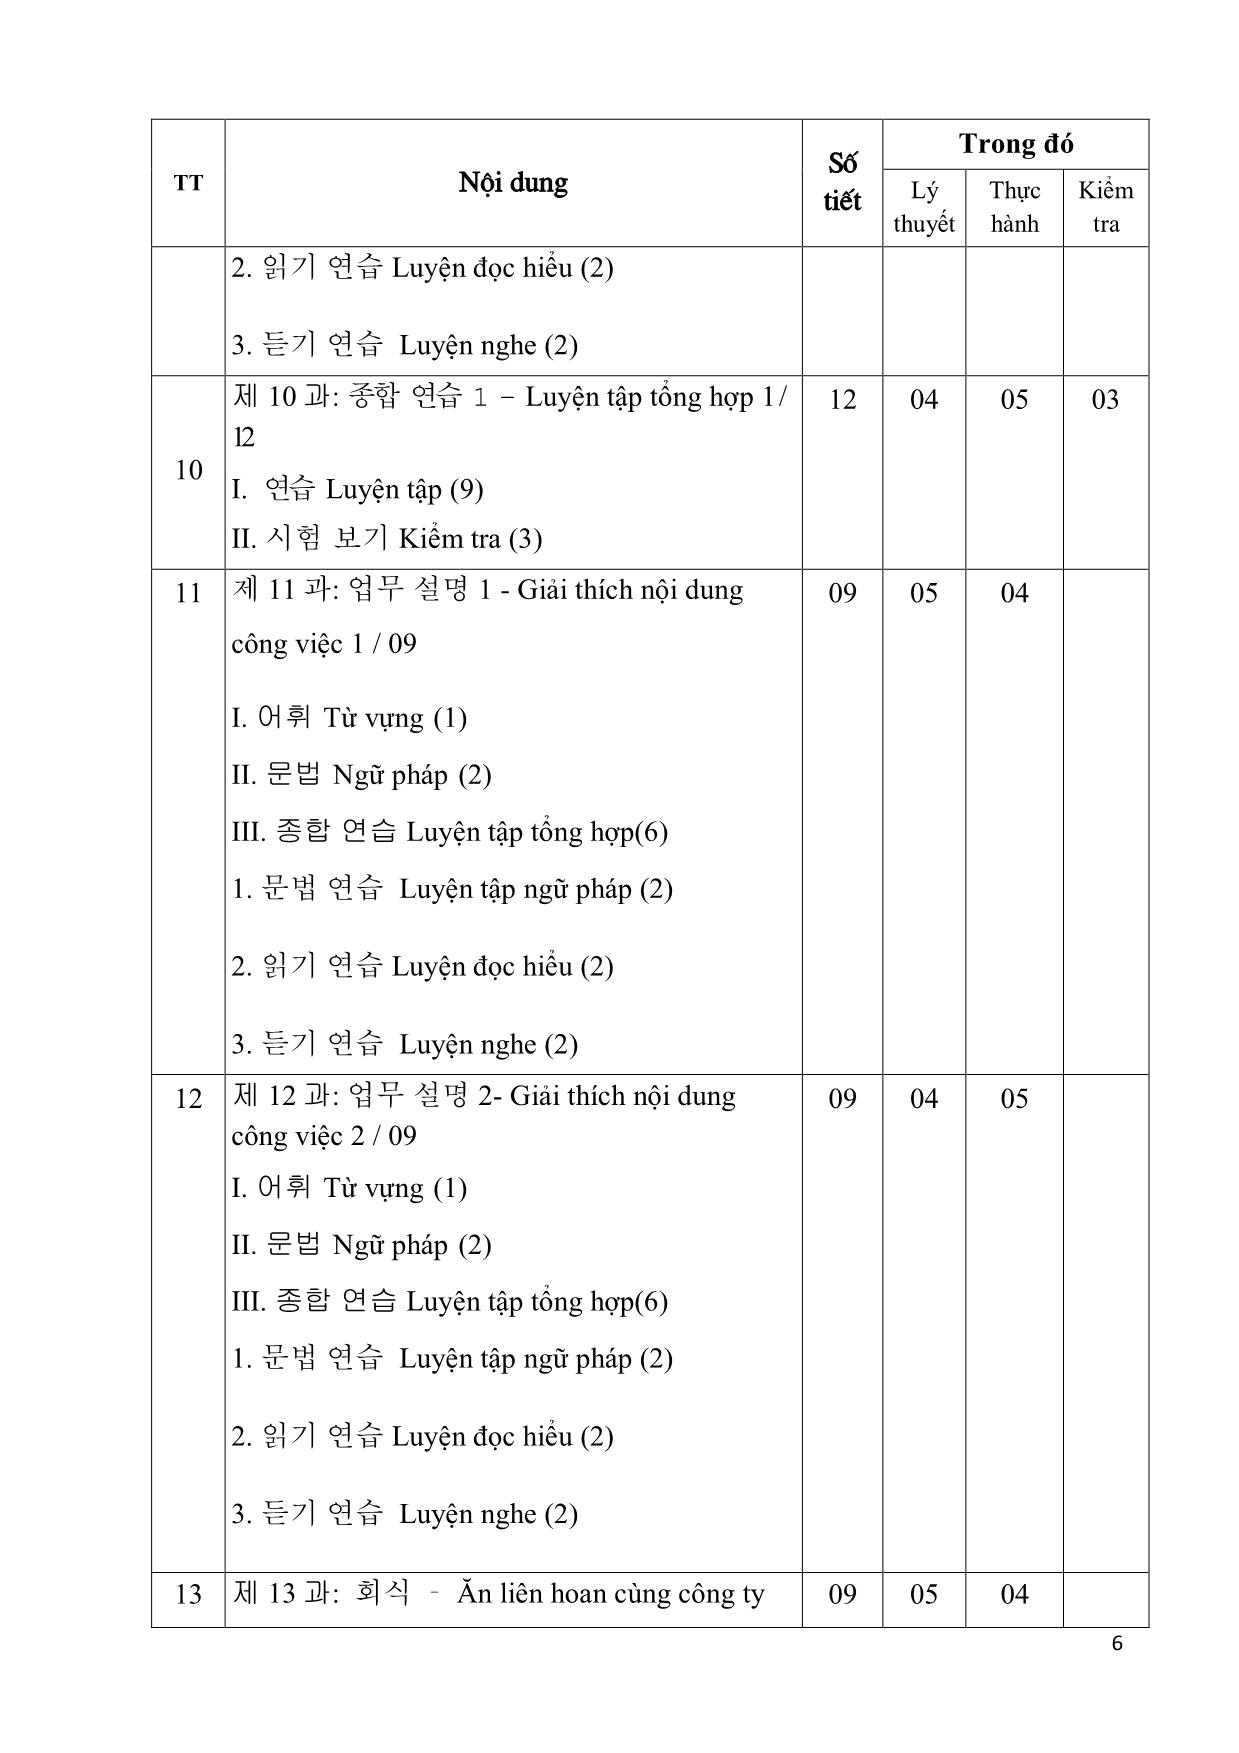 Giáo trình Chương trình tiếng Hàn dùng trong sản xuất chế tạo trang 6